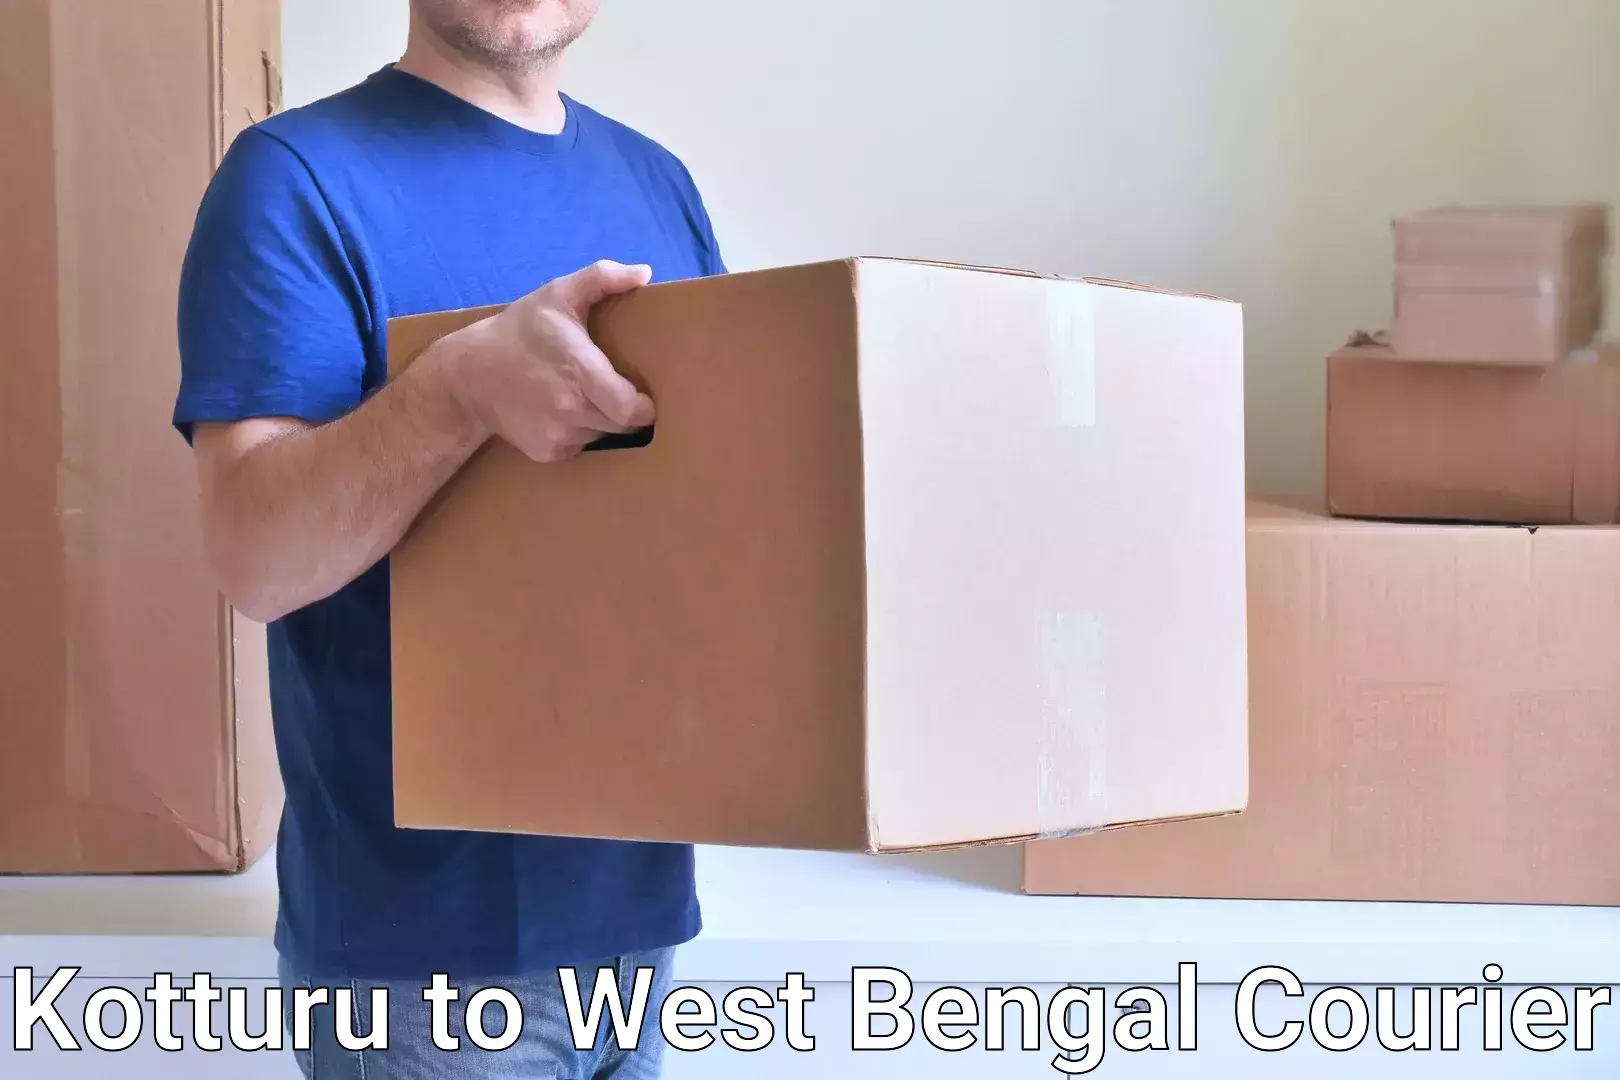 Efficient courier operations in Kotturu to Darjeeling